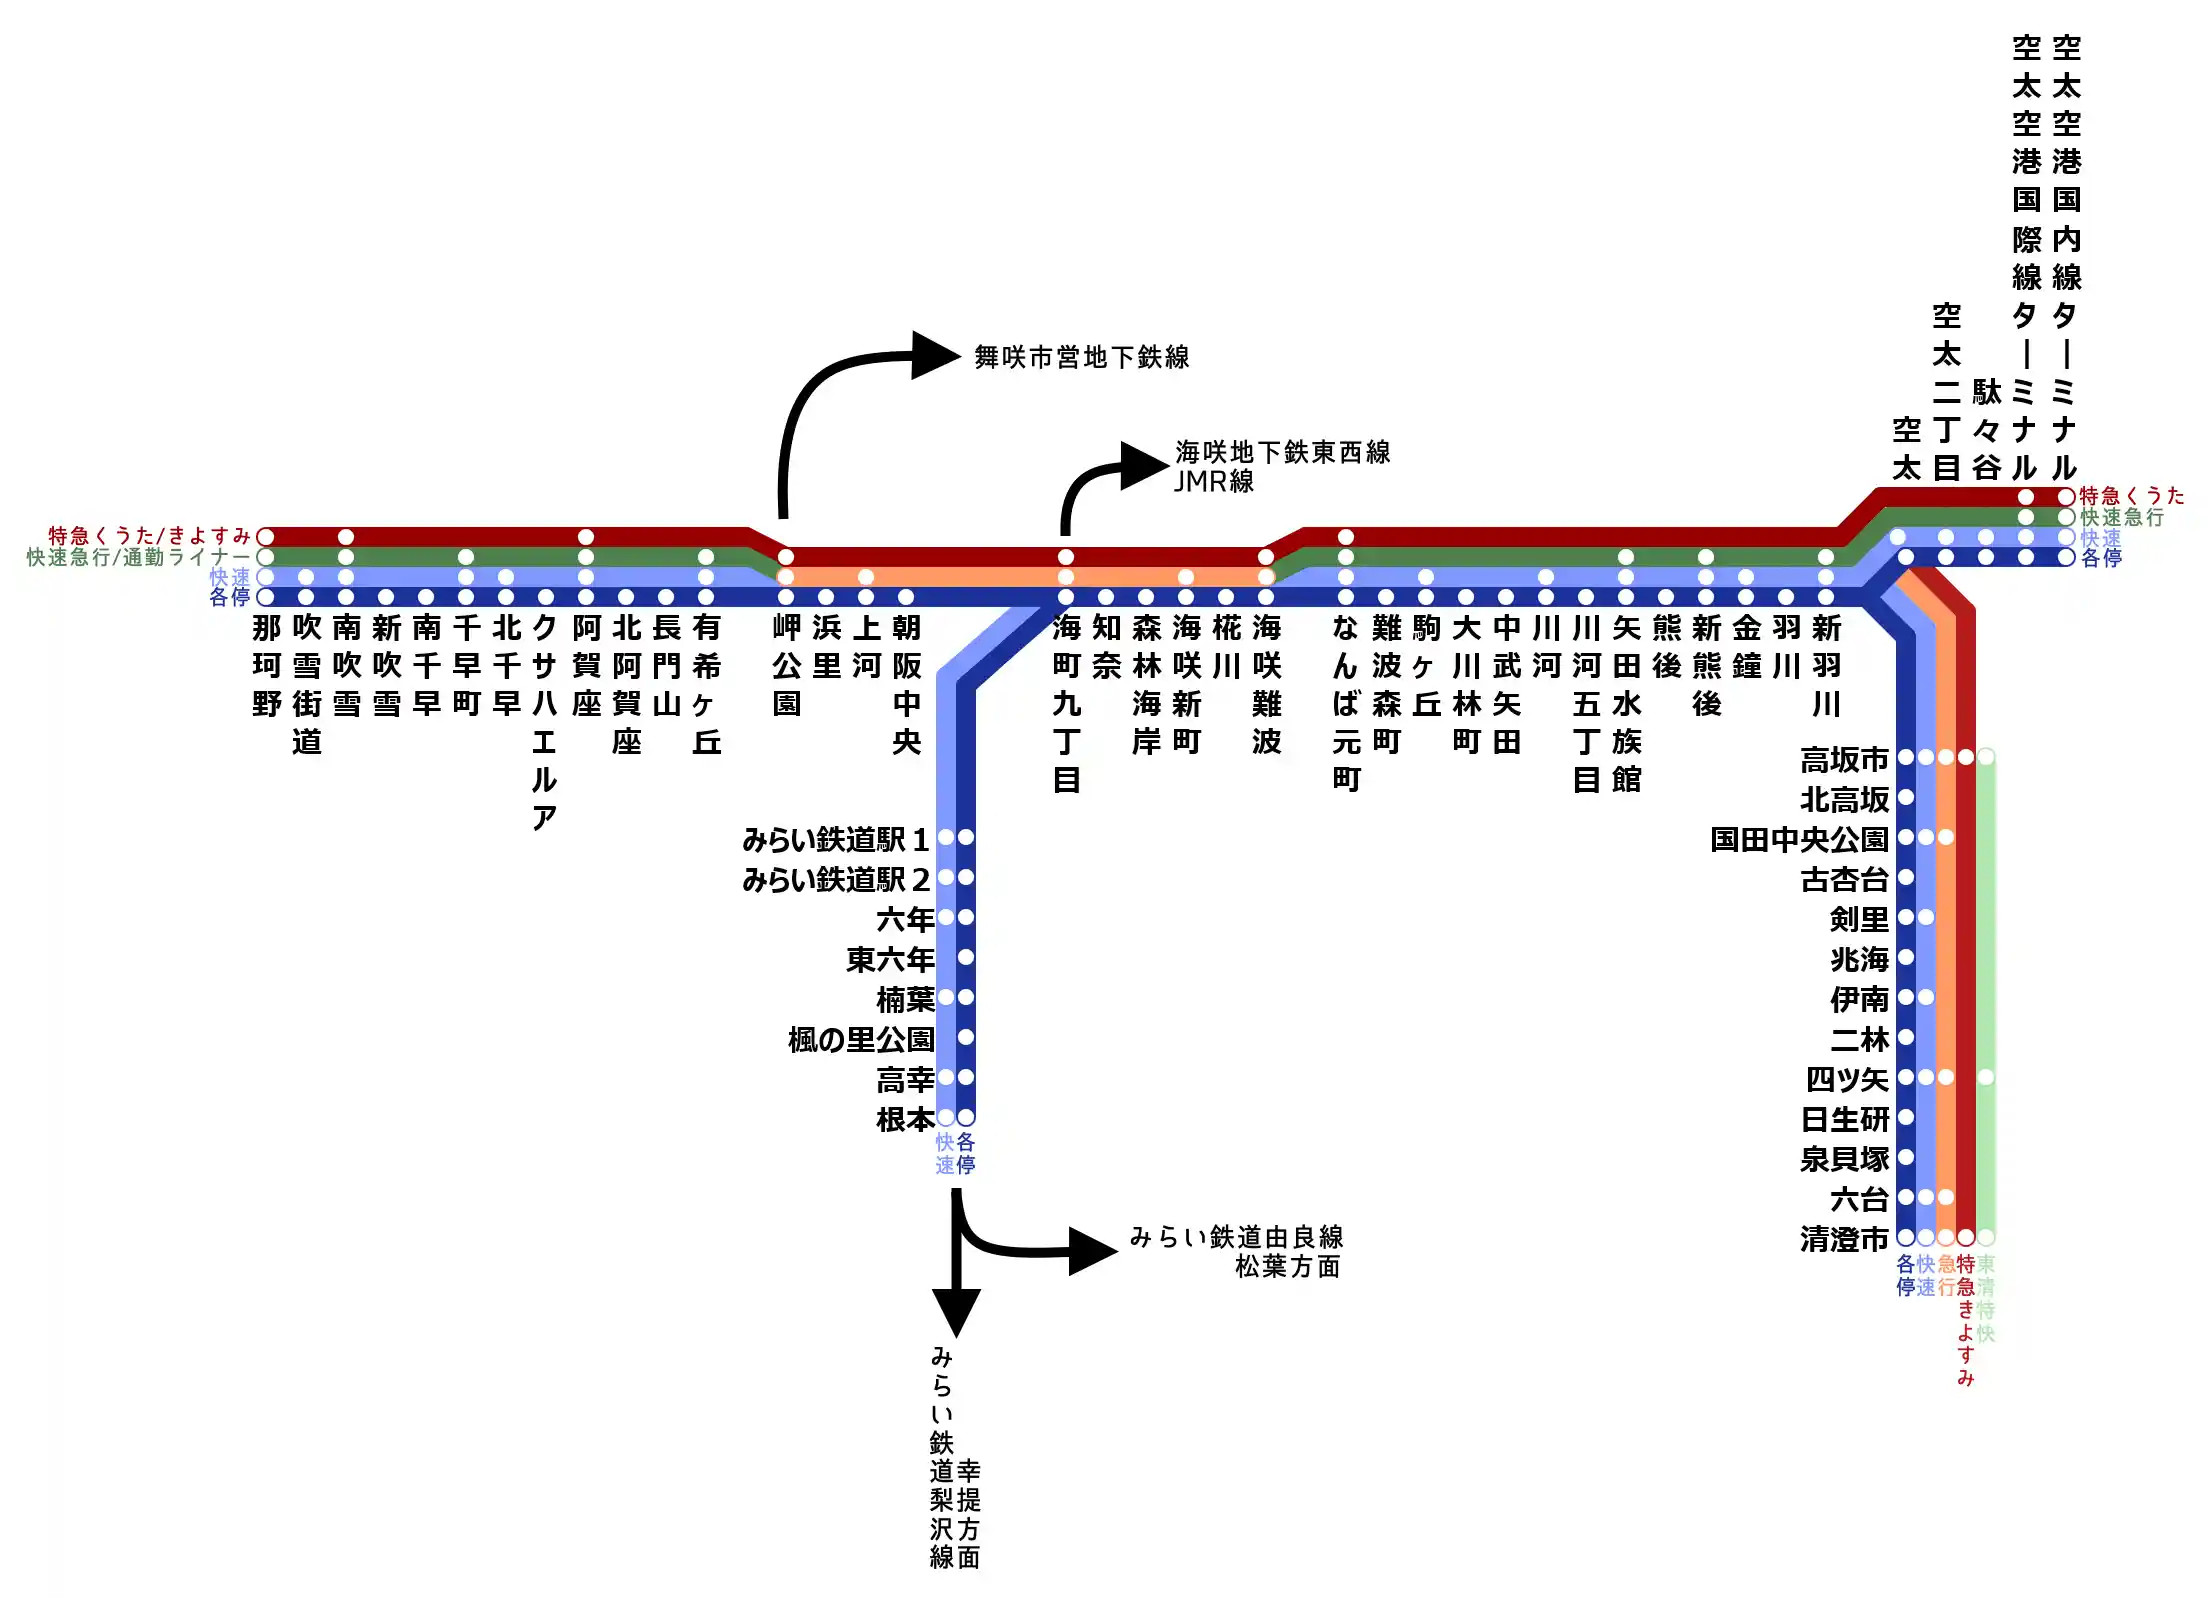 海咲地下鉄直通路線図3.png